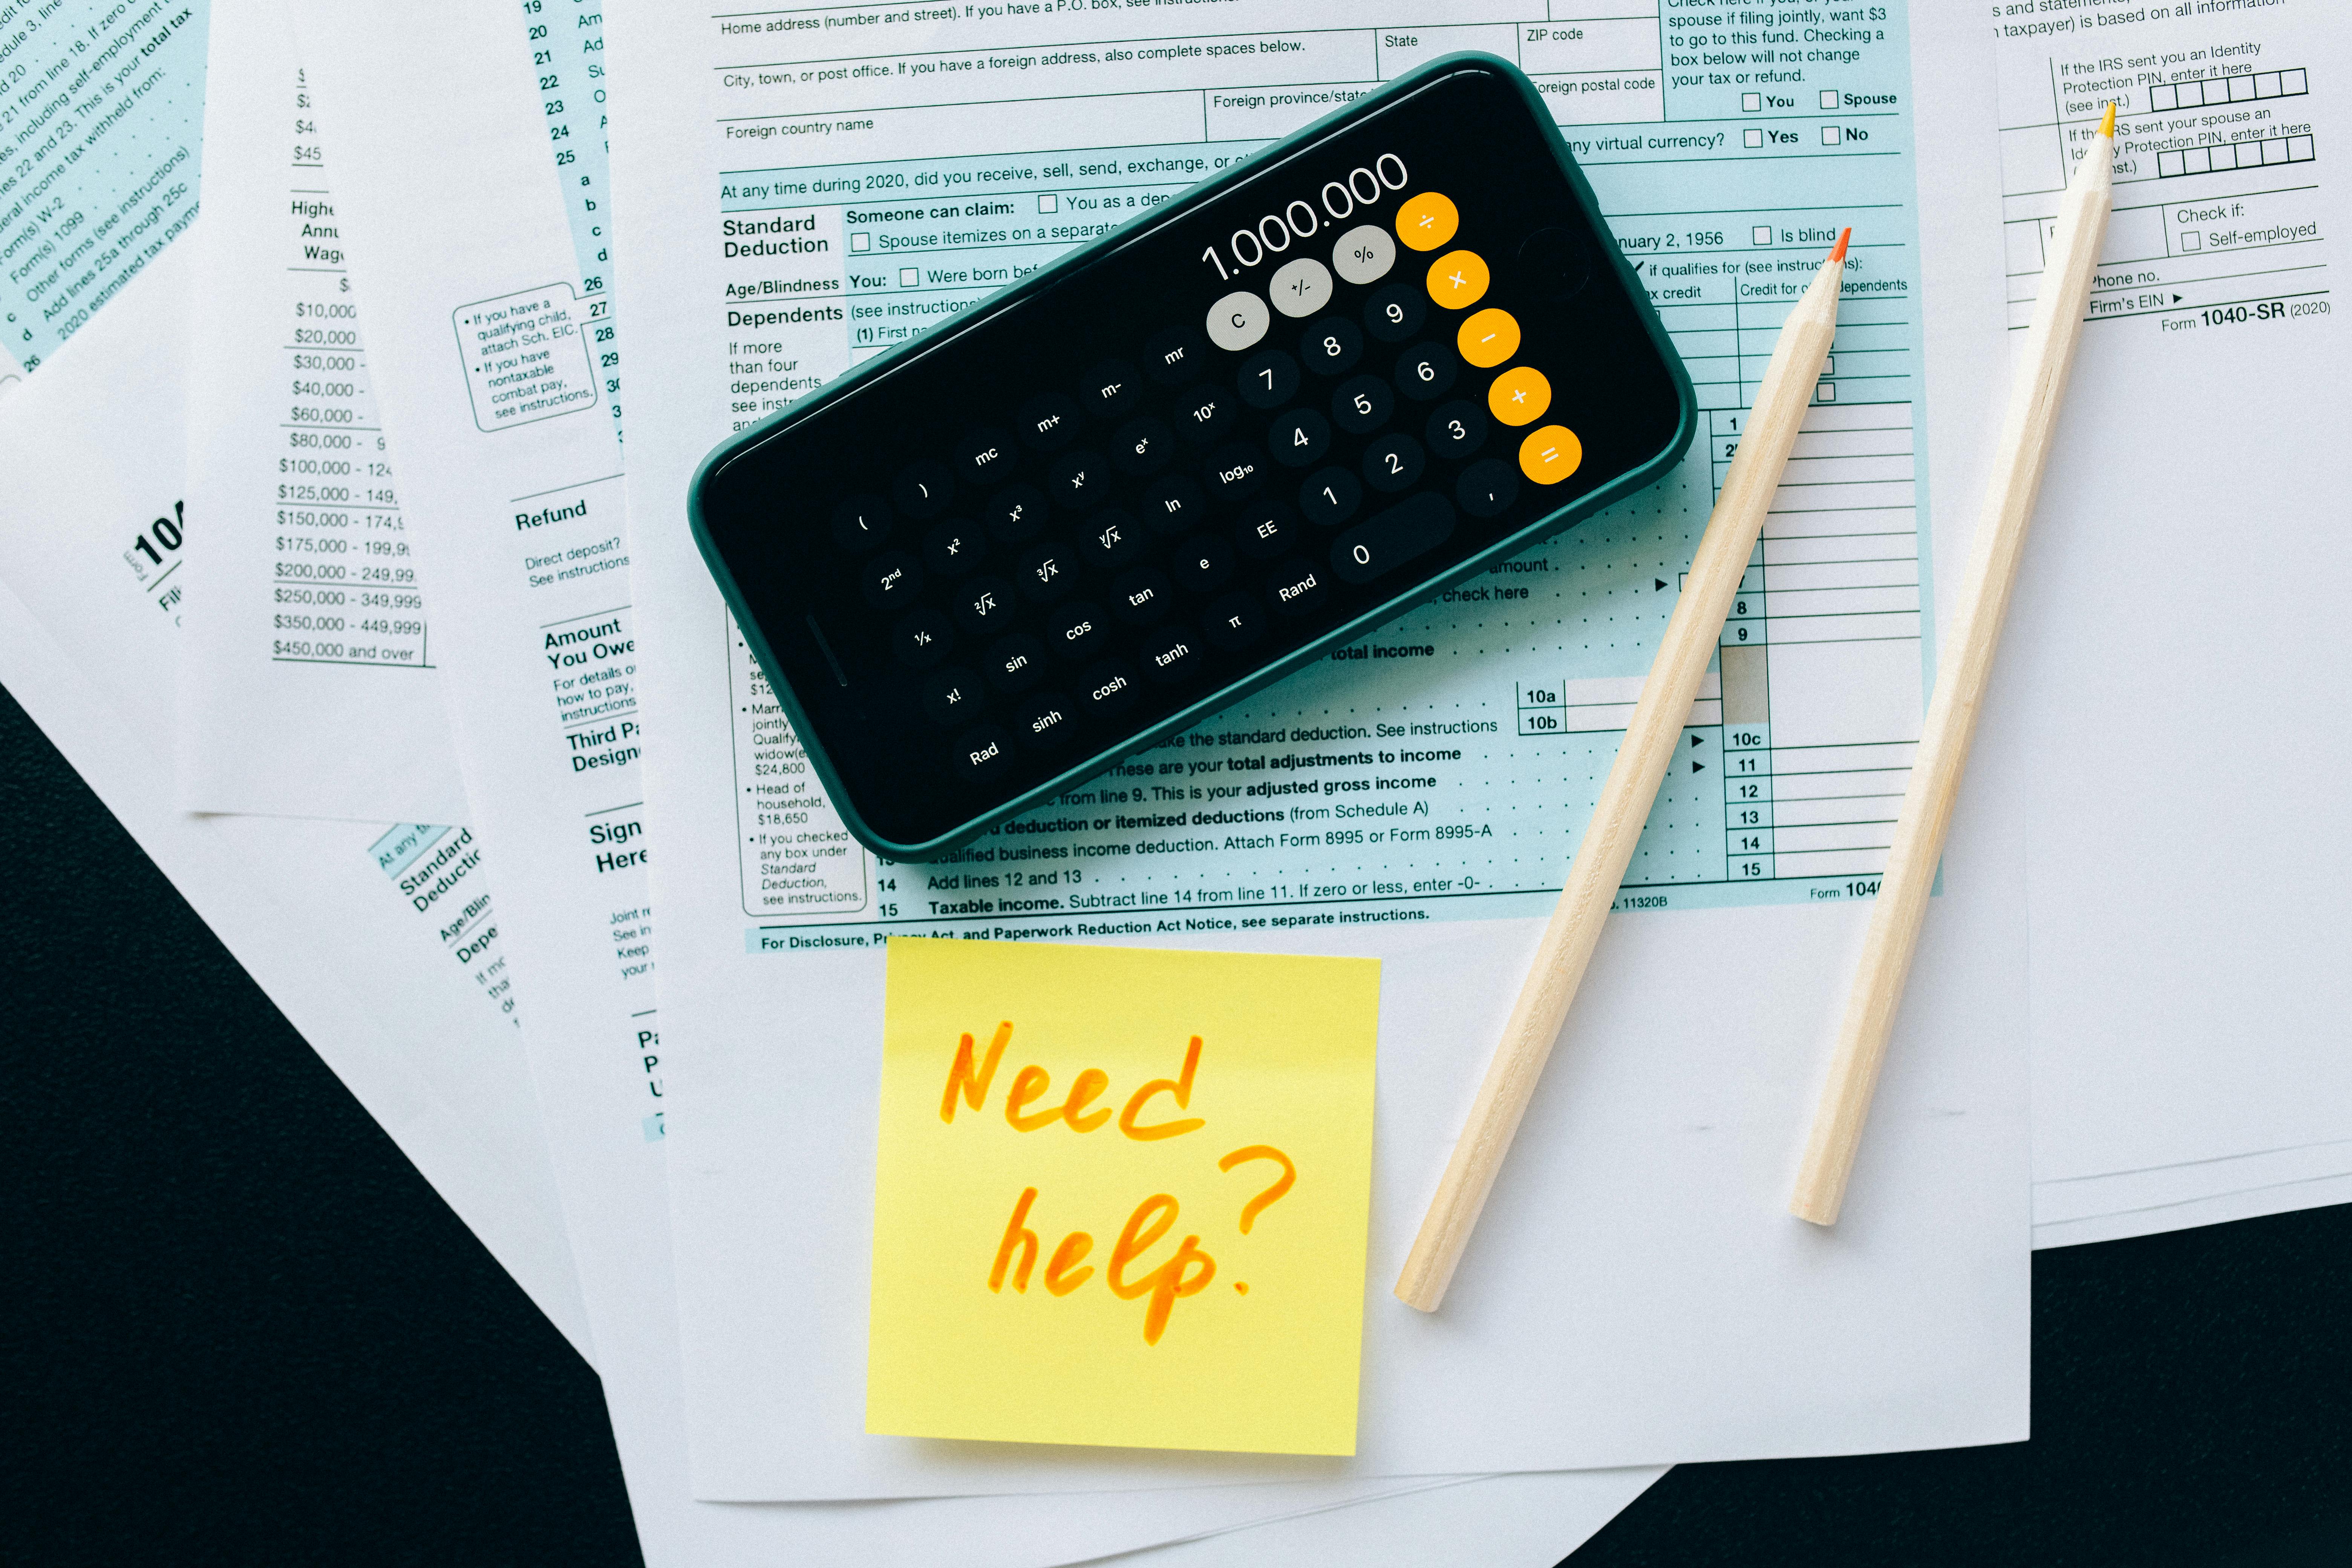 Un calculateur et un stylo posés sur des documents fiscaux avec un post-it disant "Need help?", ce qui suggère la préparation de déclarations fiscales ou la gestion financière.